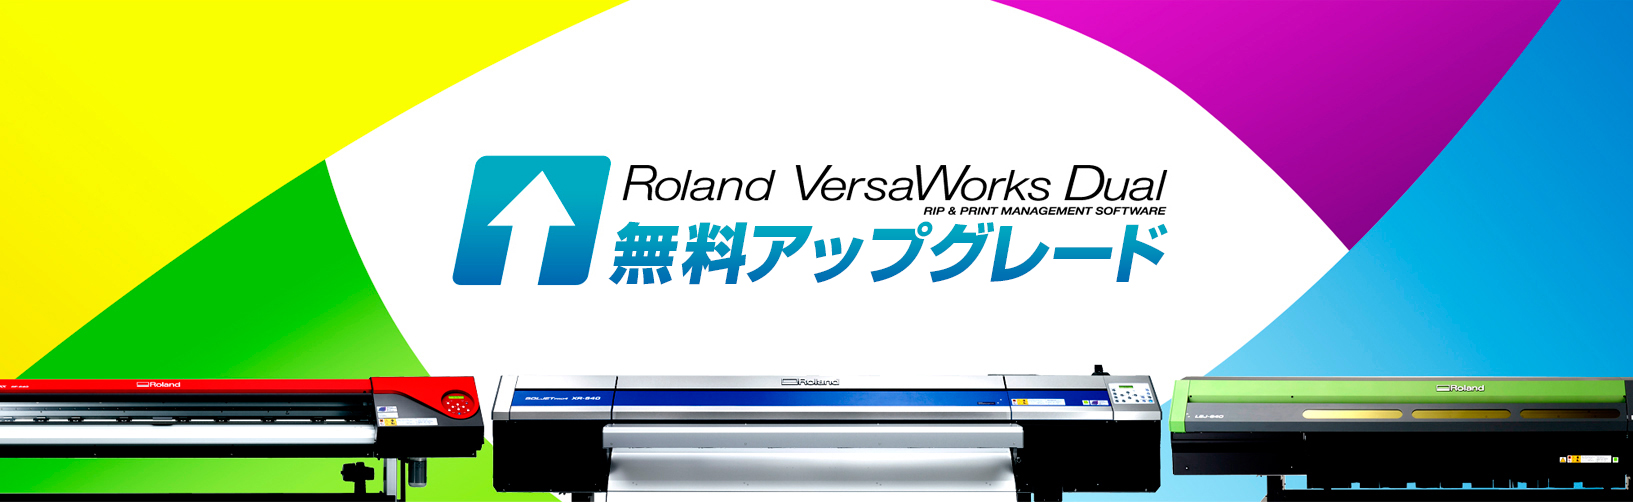 Roland VersaWorks Dual無料アップグレード